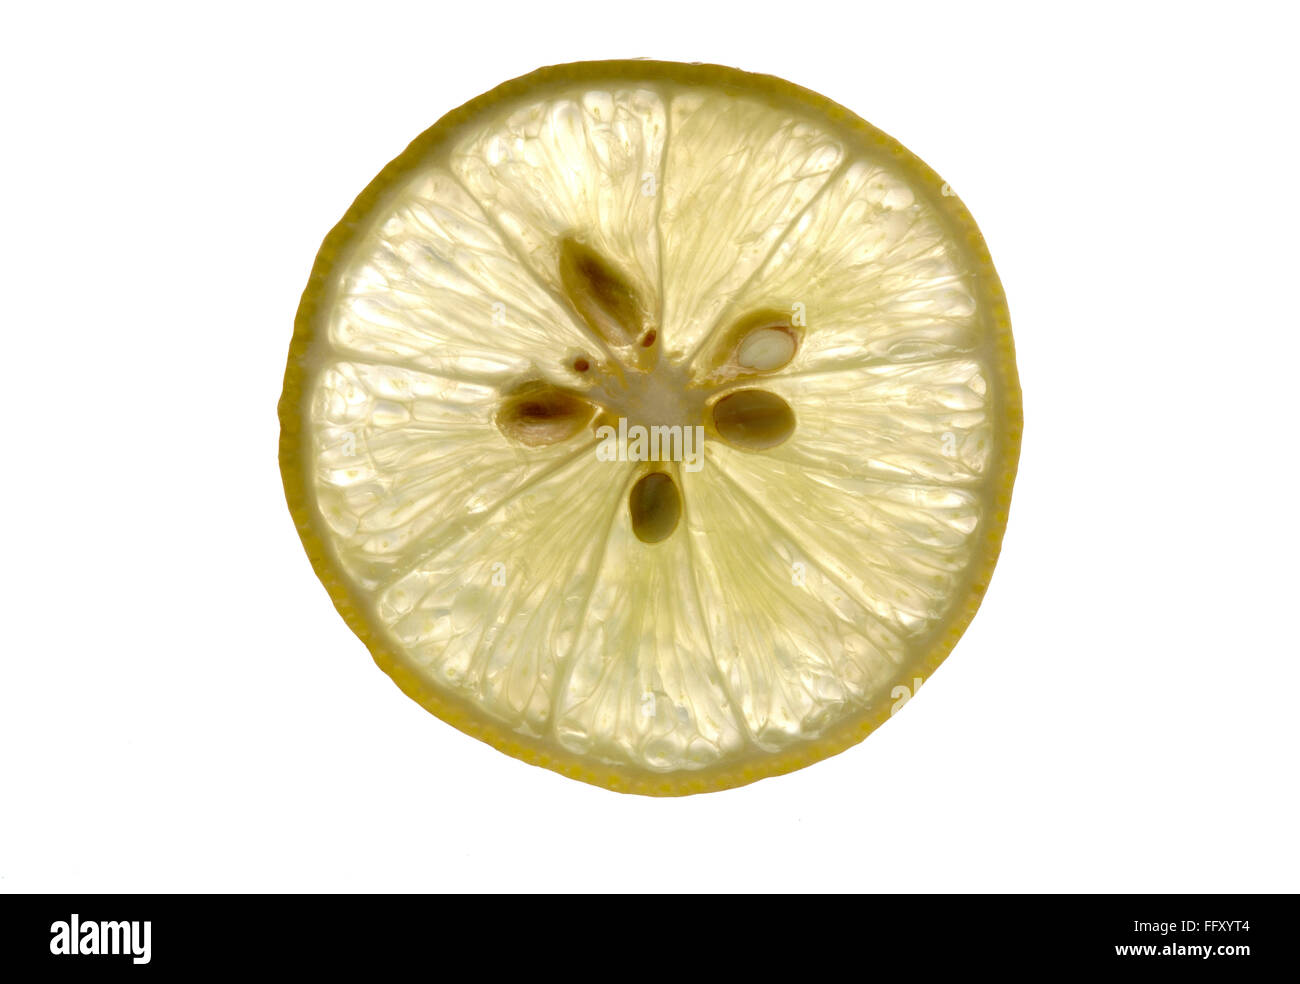 Fruit , lemon slice with nutritive value , India Stock Photo